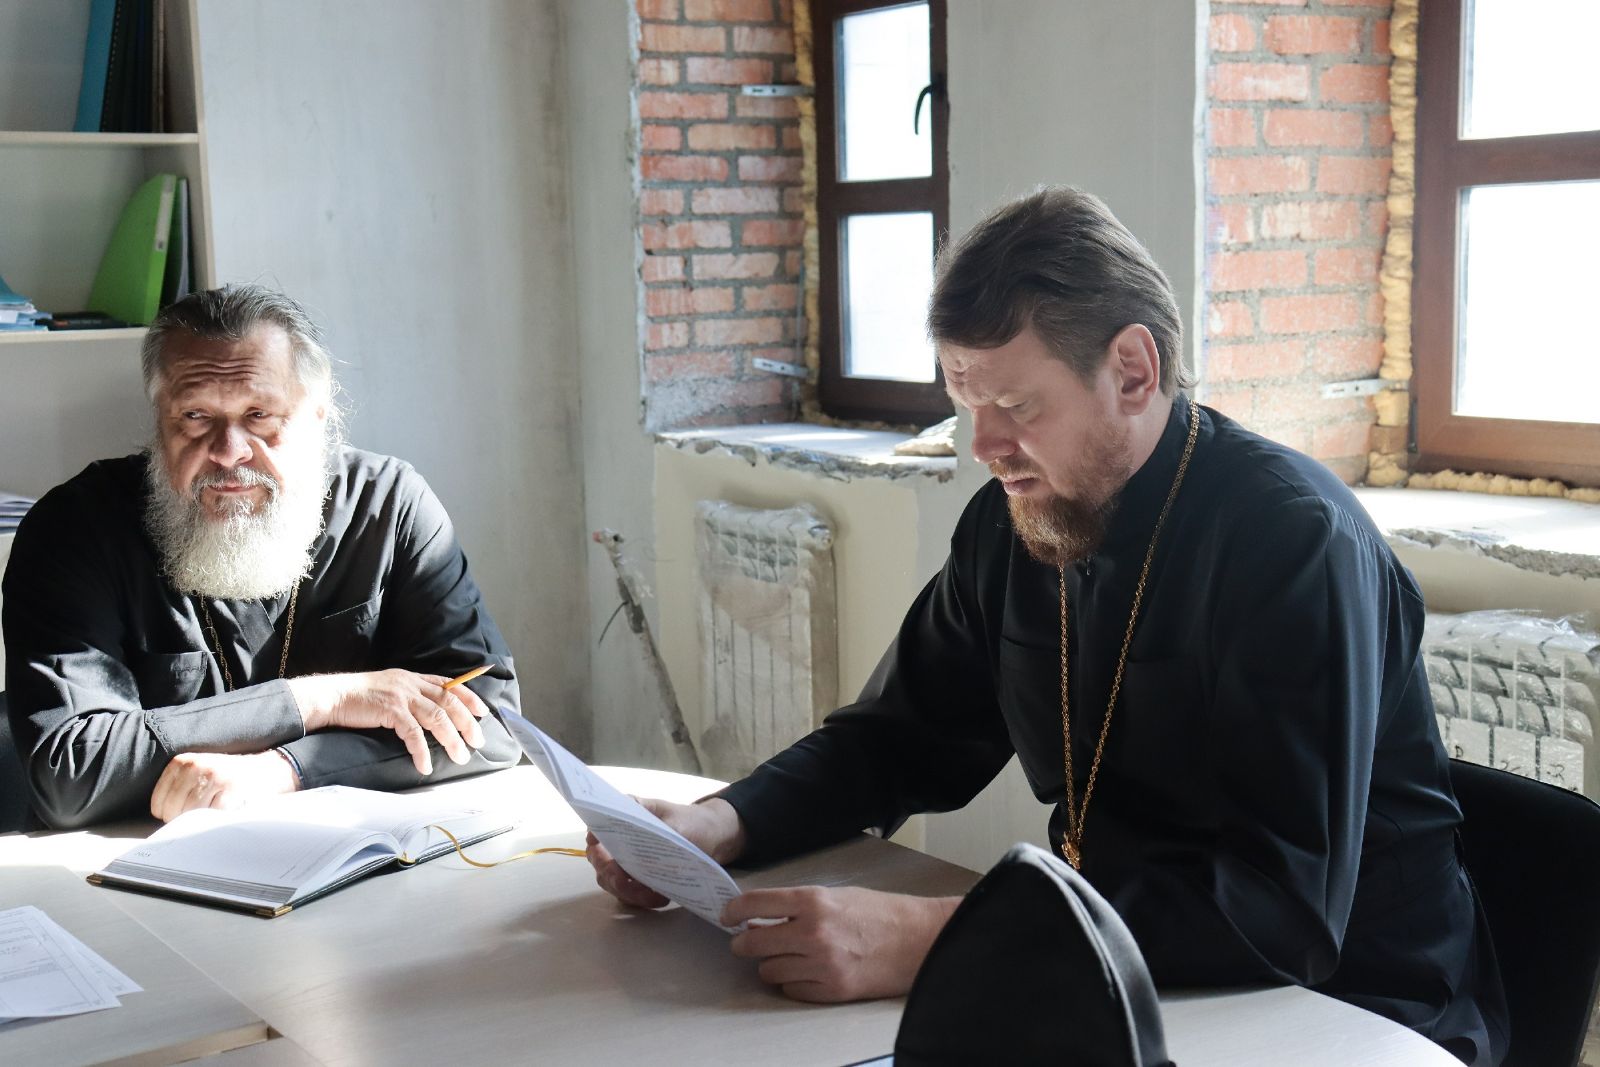 Митрополит Владимир возглавил совещание, посвященное строительству Спасо-Преображенского кафедрального собора